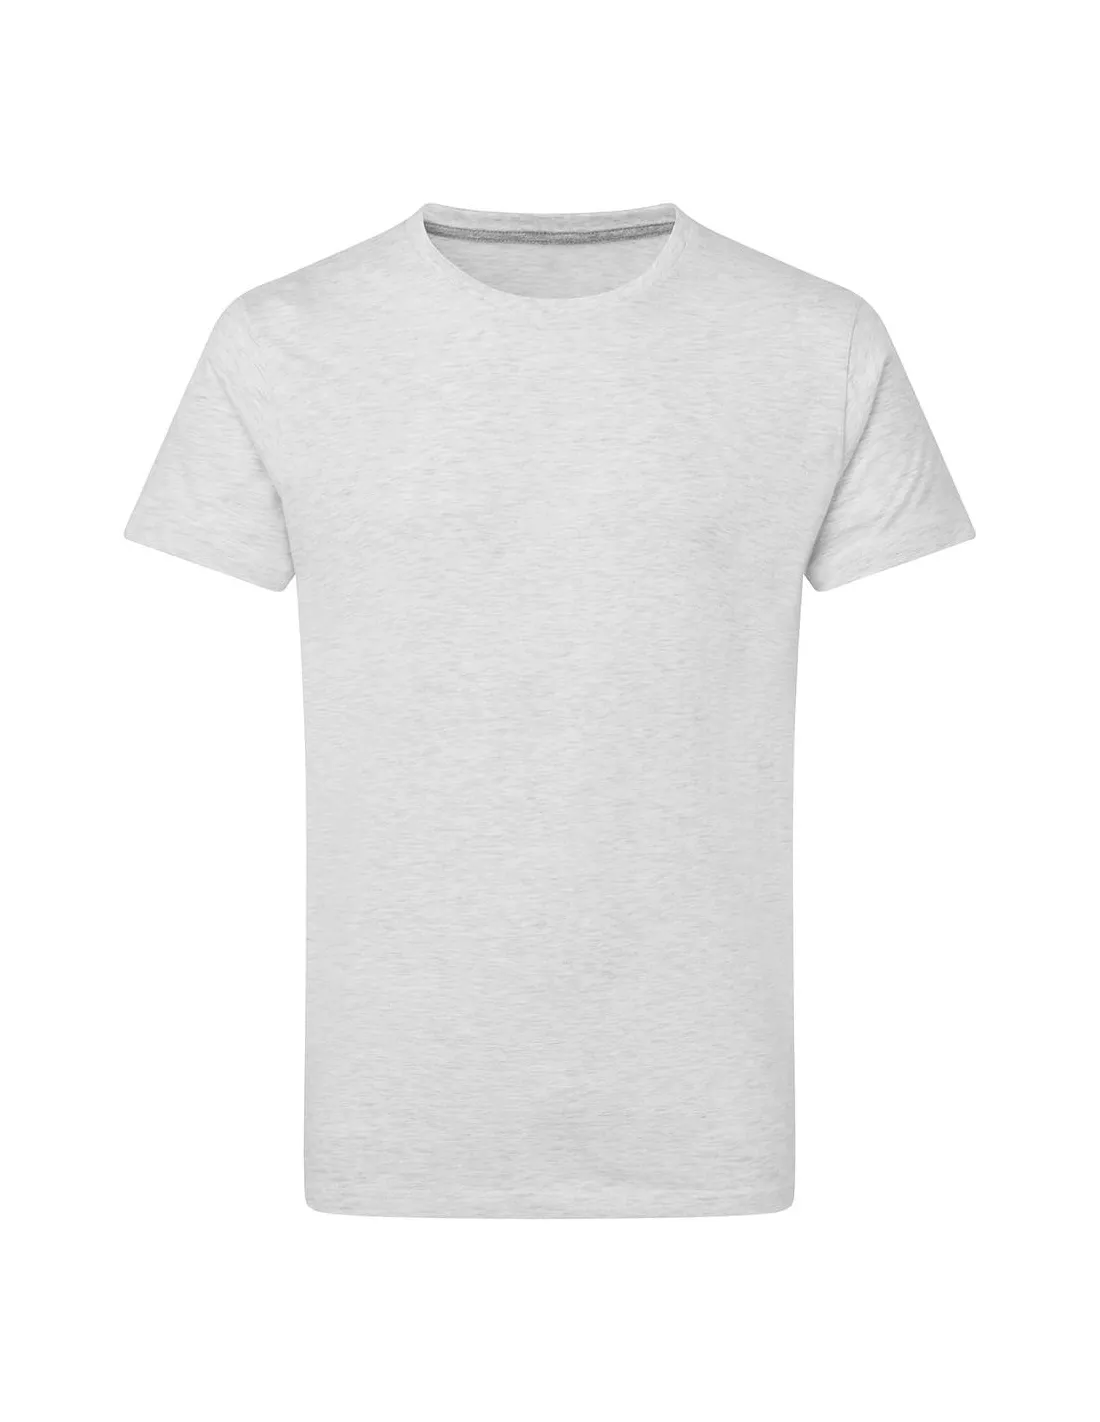 Camiseta Perfect Print sin etiqueta